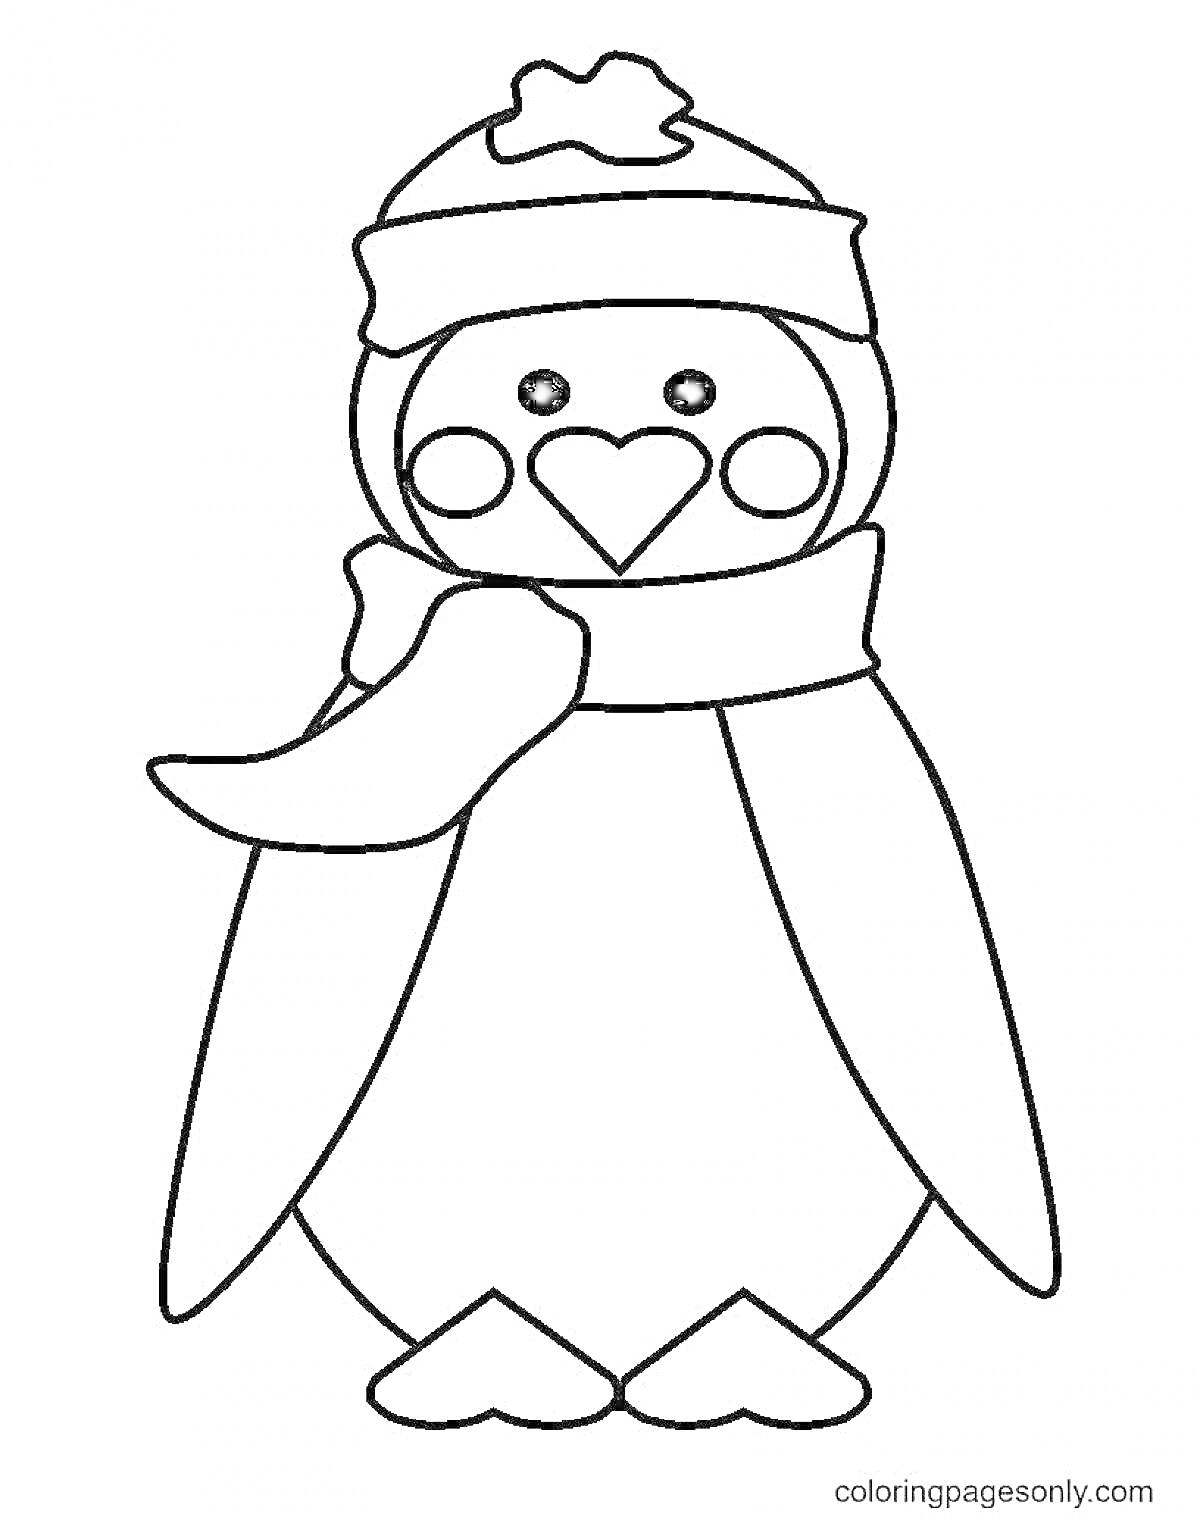 Раскраска Пингвин в шапке и шарфе с сердечком на животе